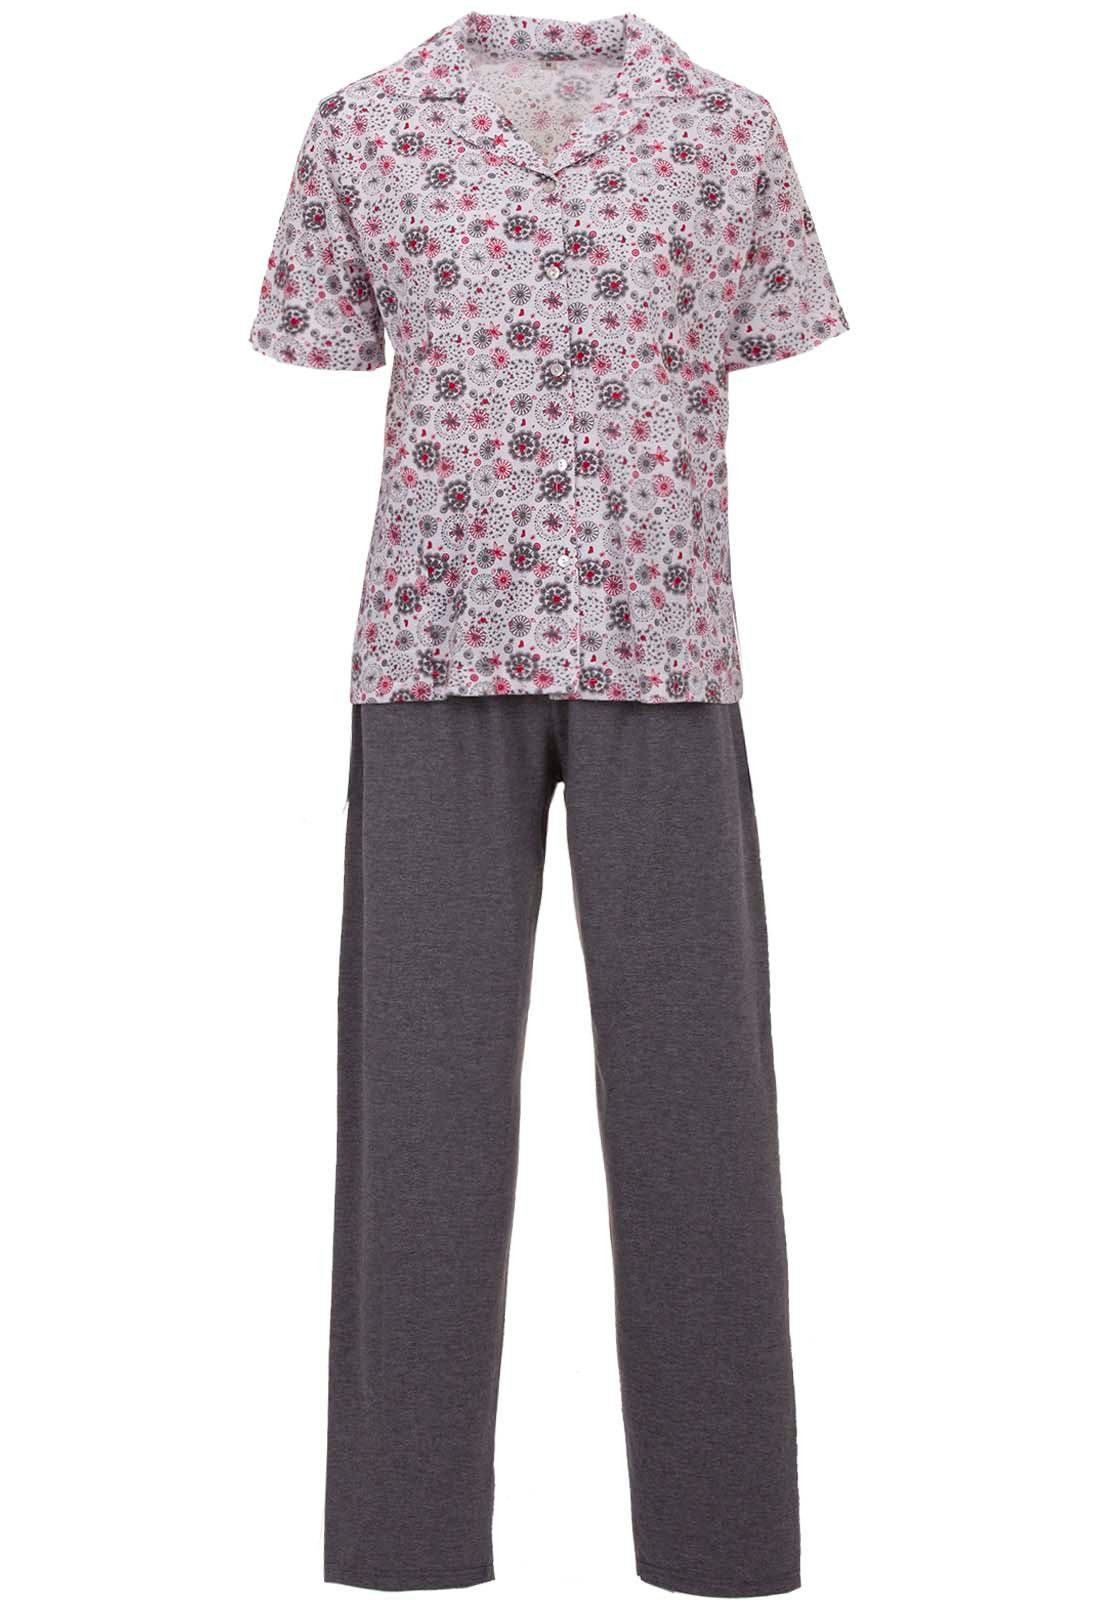 zeitlos Schlafanzug »zeitlos Schlafanzug Set Pyjama Damen Capri Kurzarm  Print Knöpfe Kragen 2 tlg.« online kaufen | OTTO